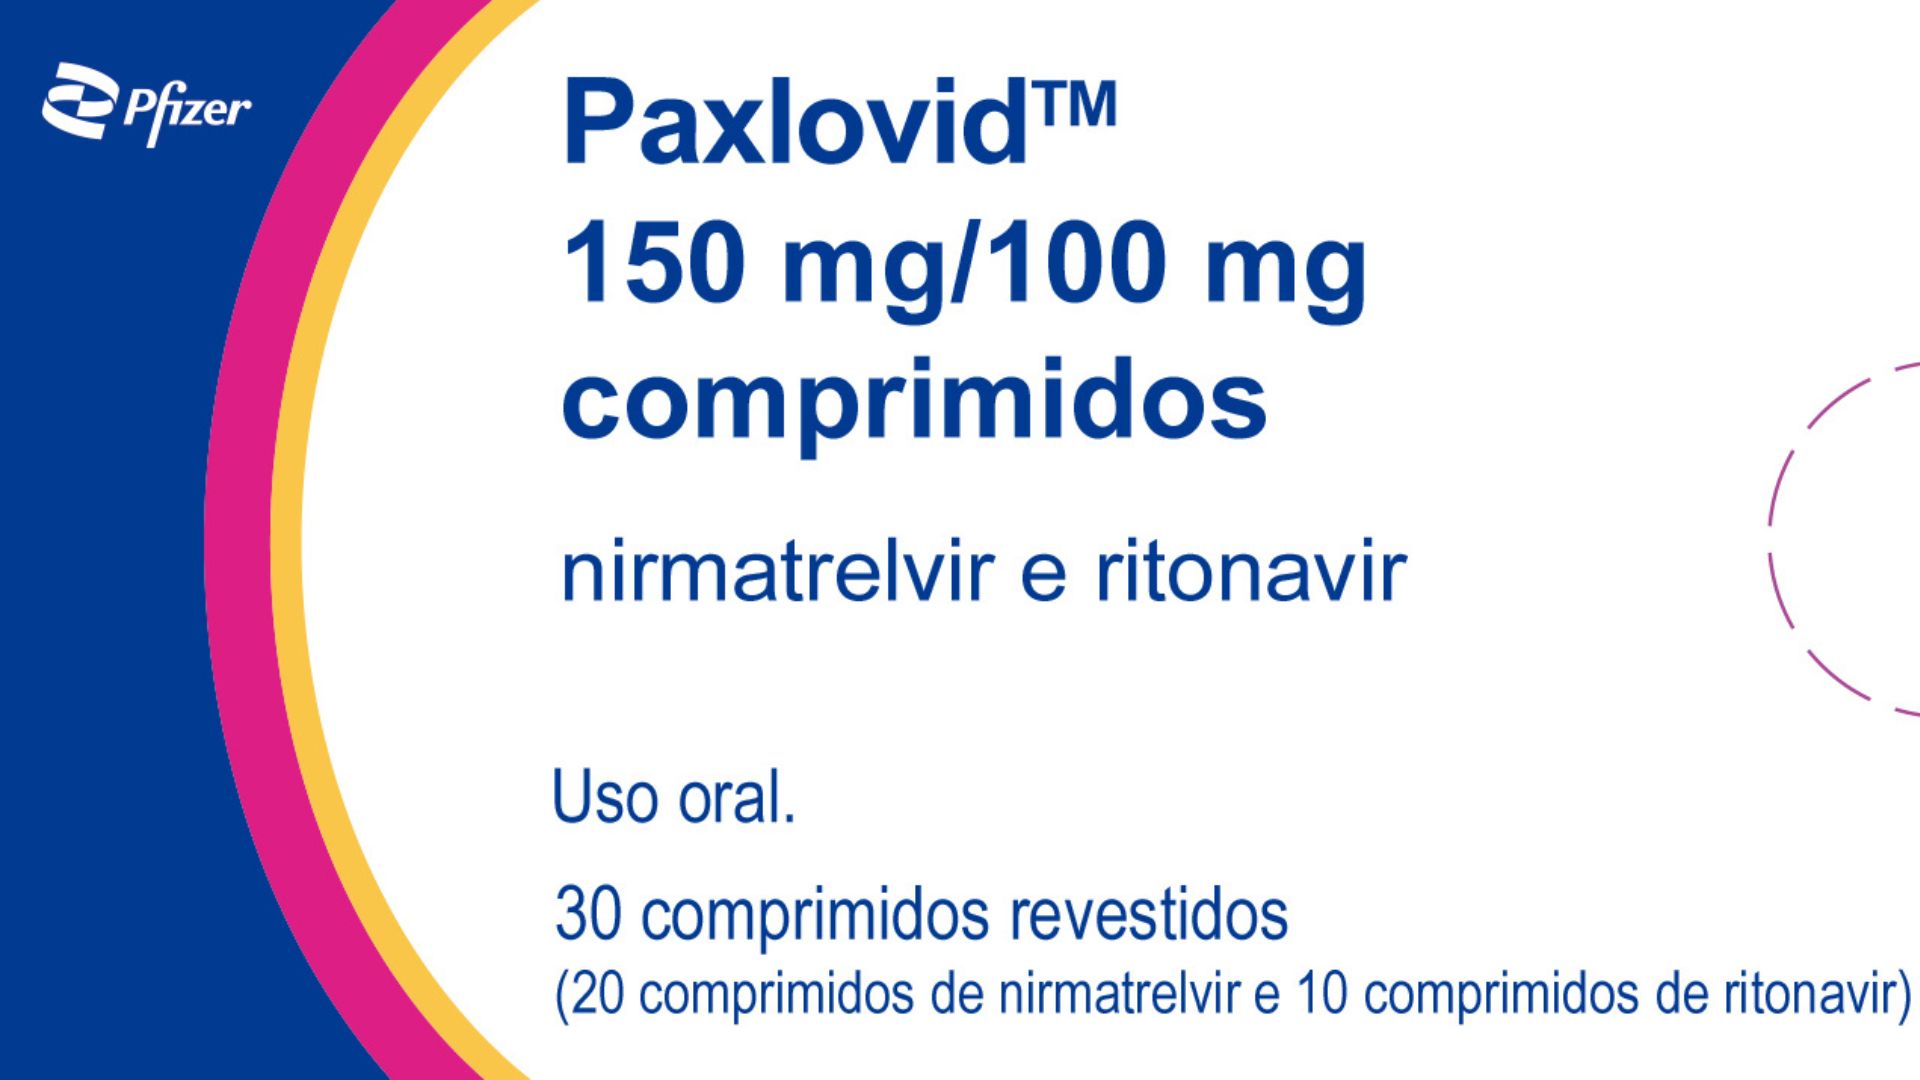 Rotulagem do Paxlovid em português - Foto: Reprodução/Pfizer Brasil